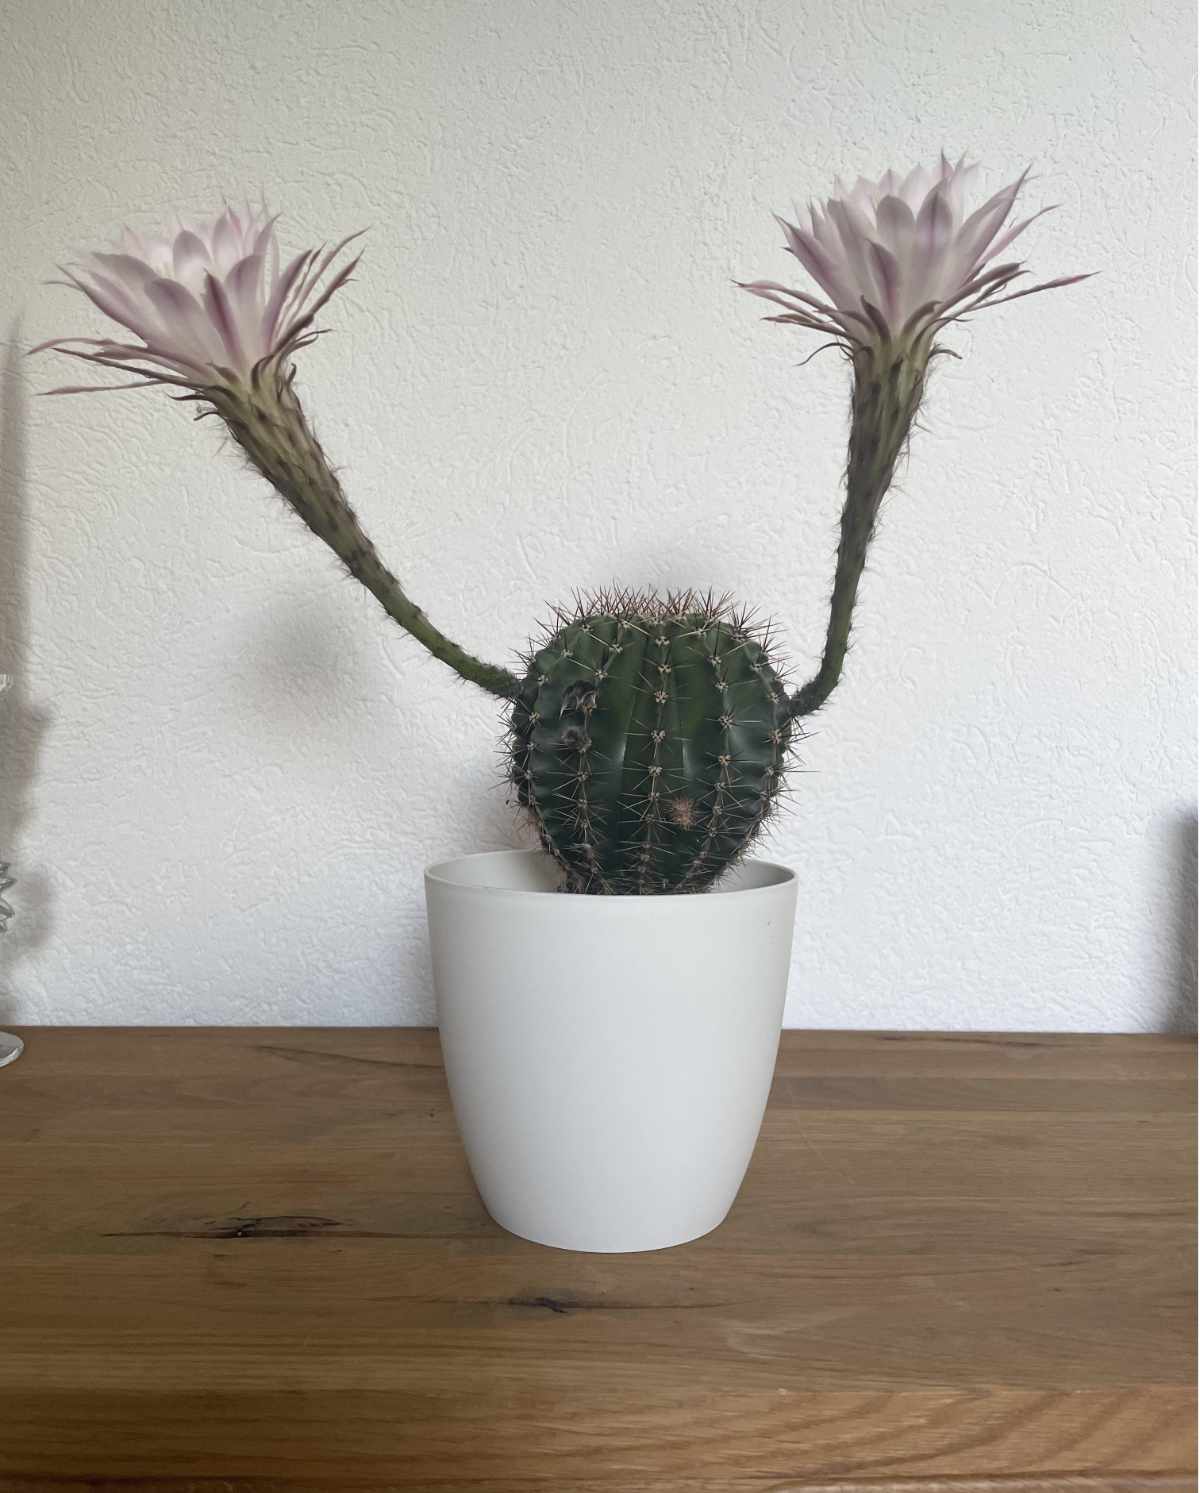 My mum’s cactus has arms